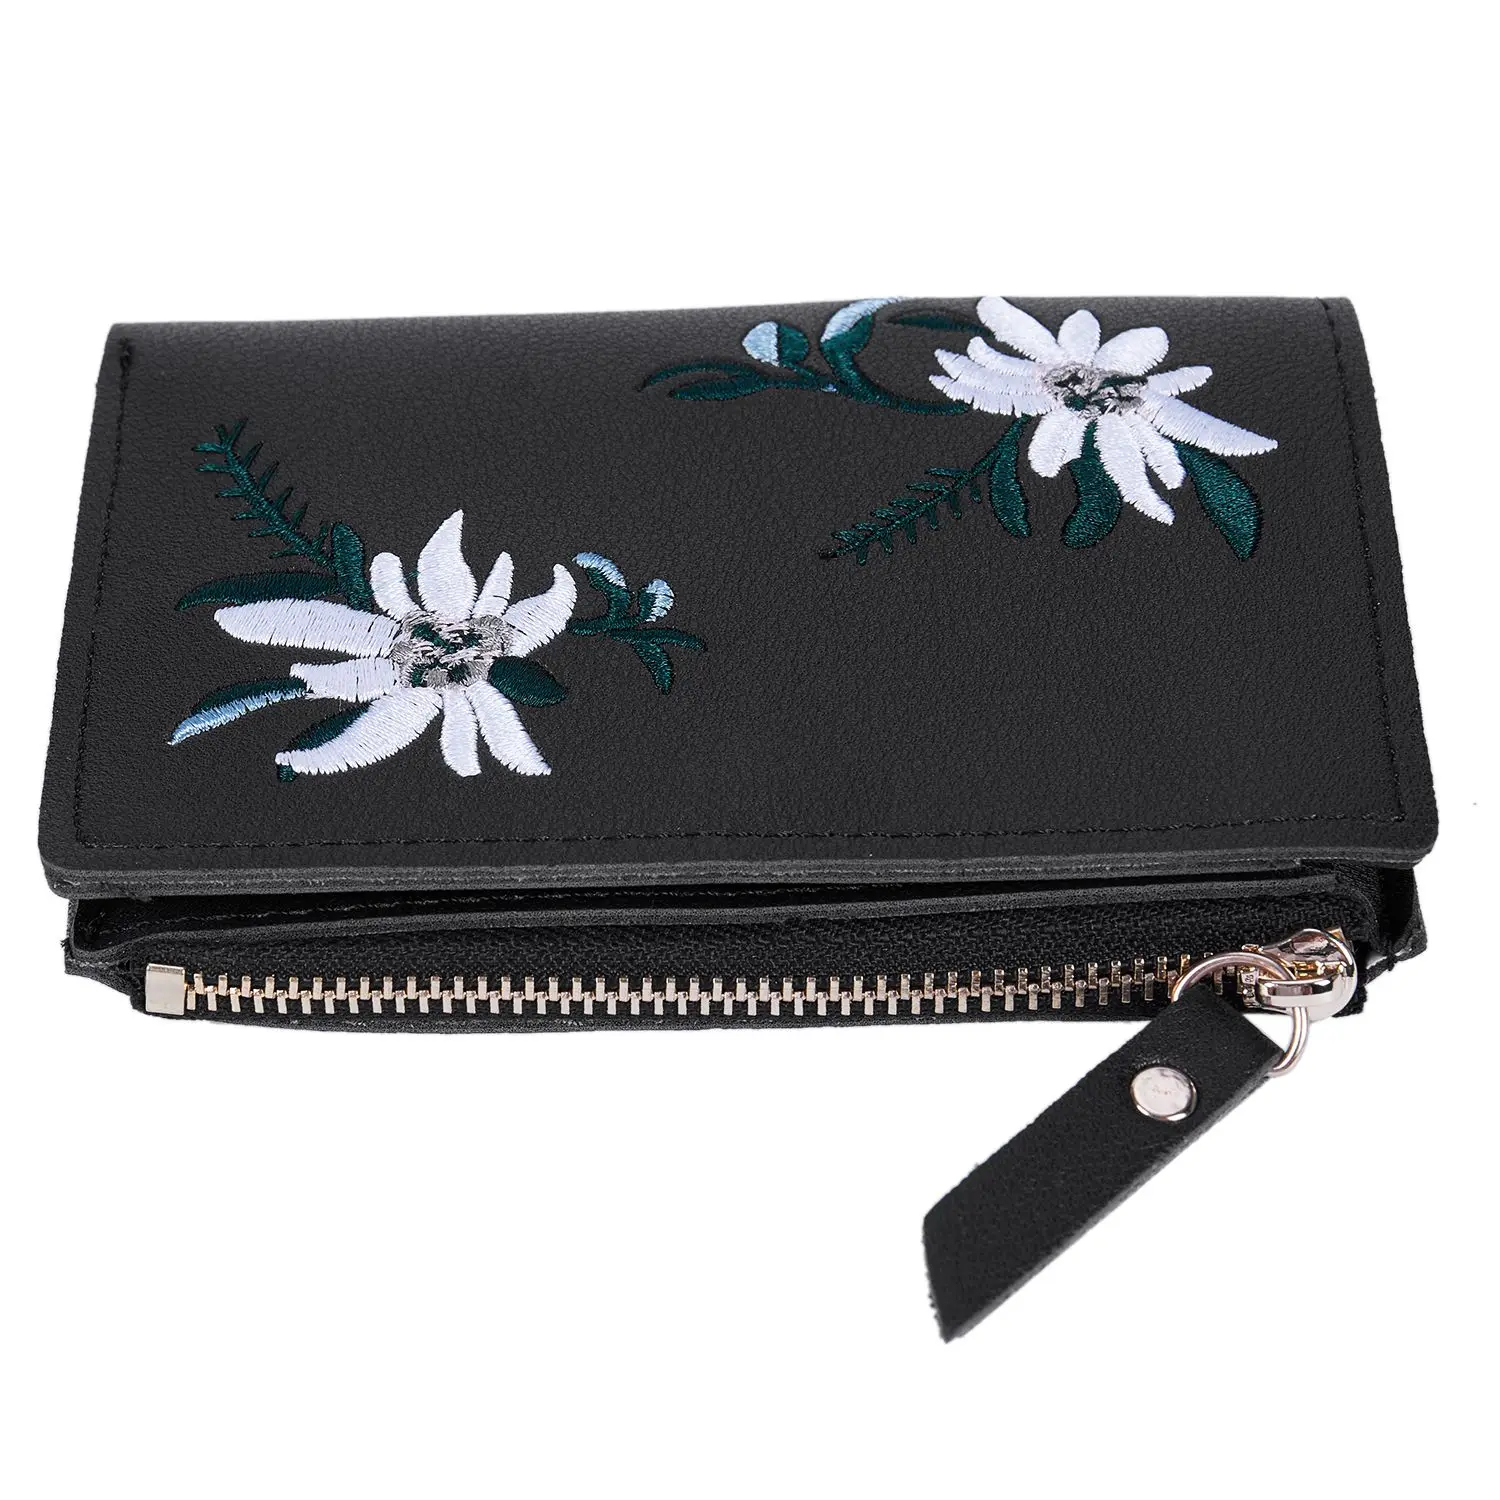 IFS Для женщин клатч бумажник PU Для женщин вышивка на молнии короткие бумажник портмоне Держатели сумочка